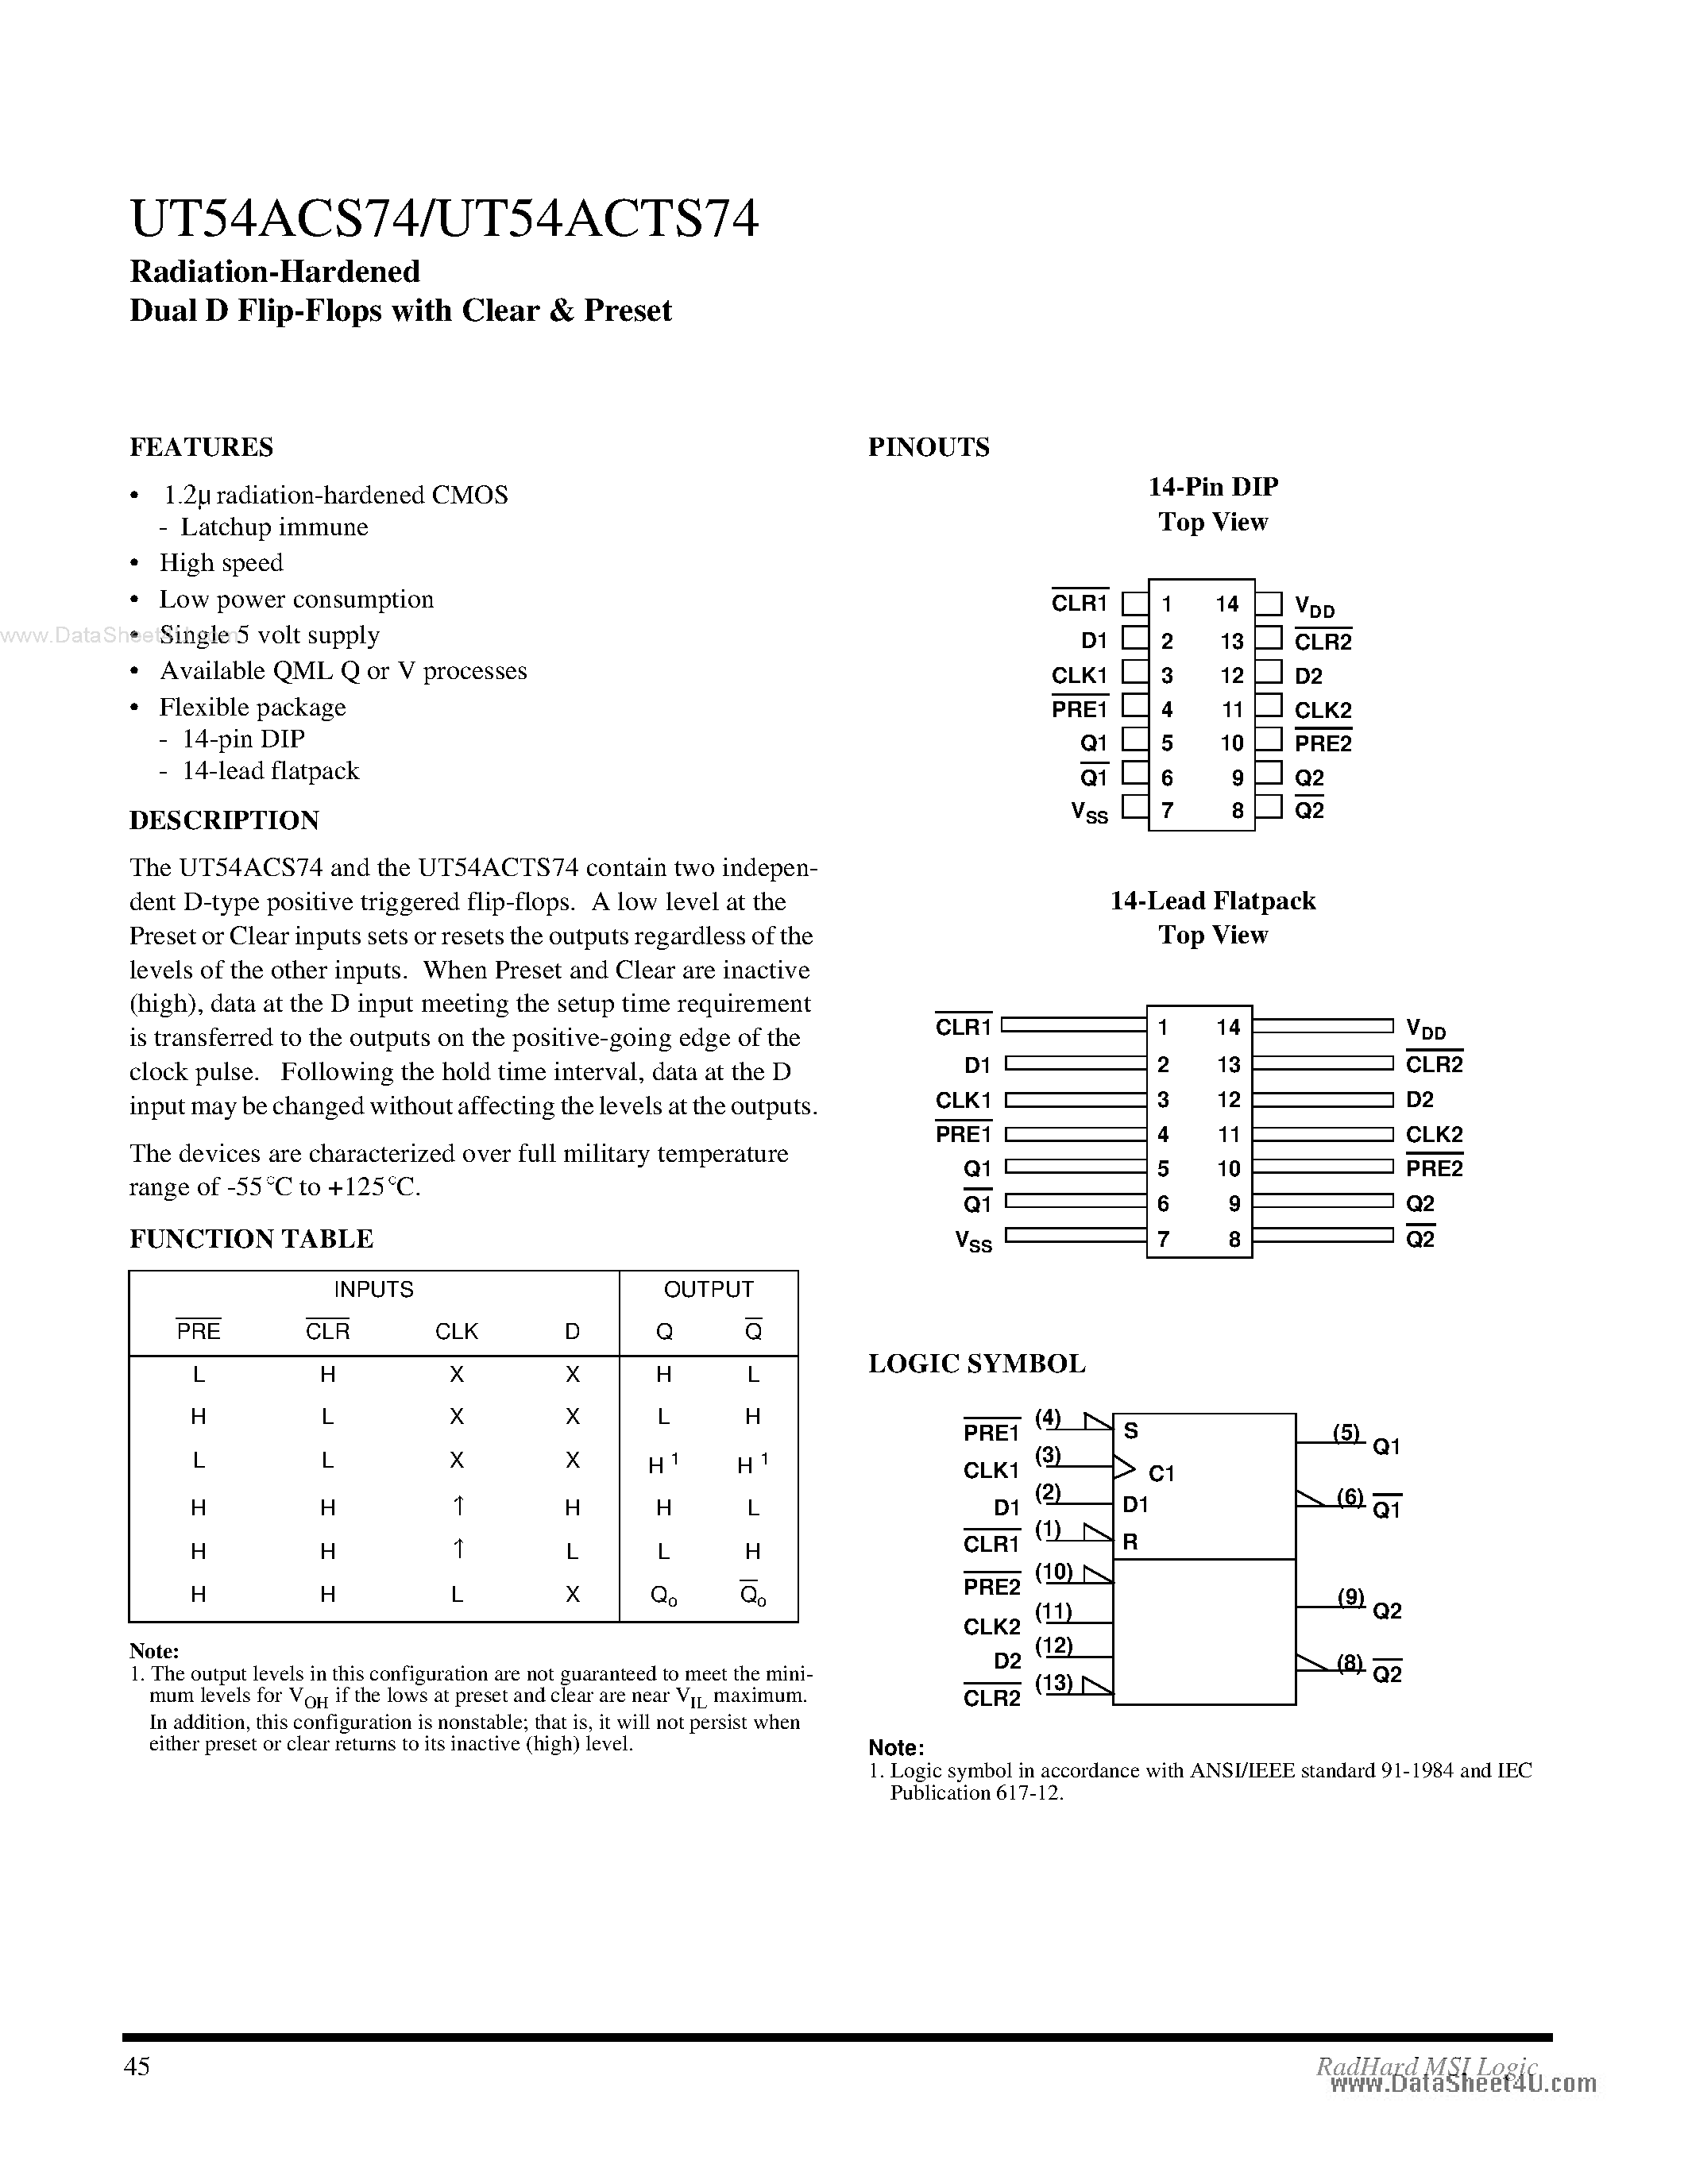 Datasheet UT54ACS74 - Radiation-Hardened Dual D Flip-Flops page 1